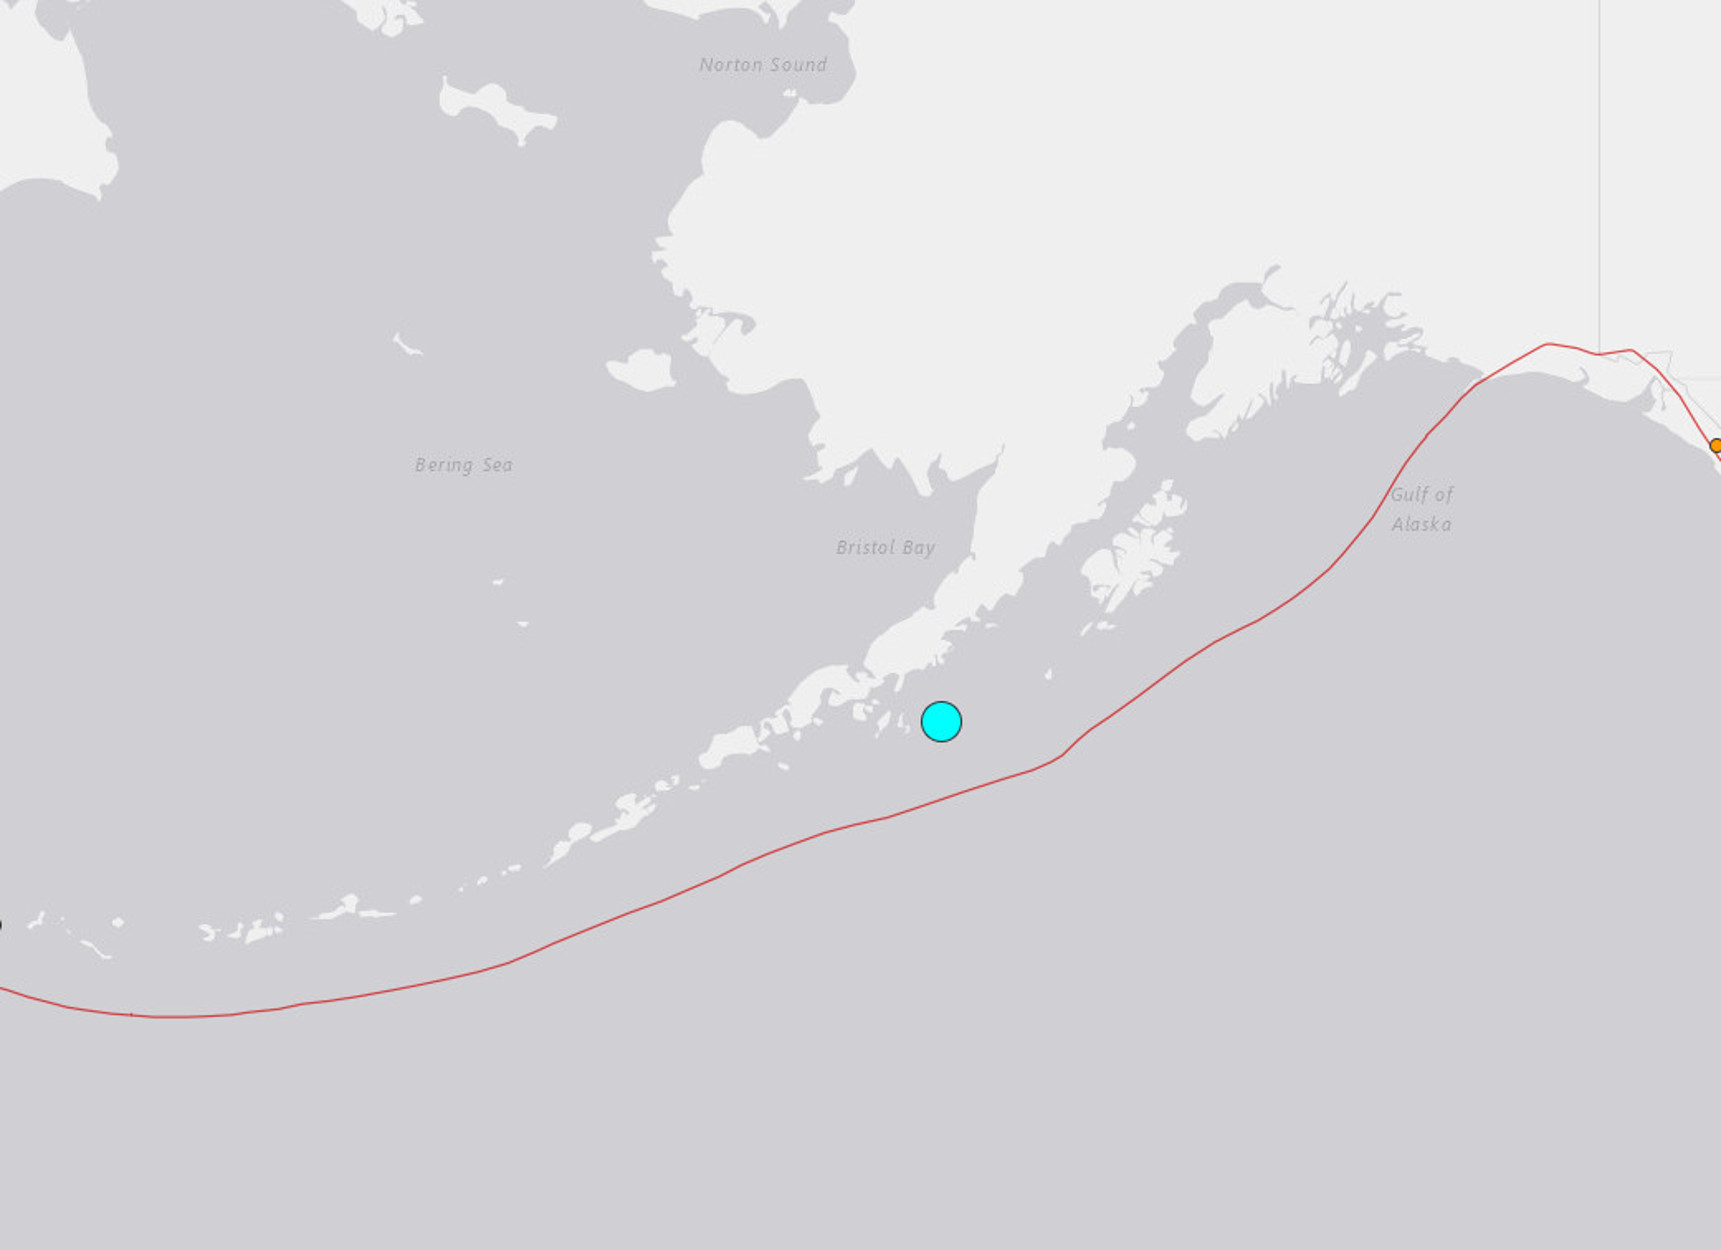 Τρομακτικός σεισμός 7,8 Ρίχτερ στην Αλάσκα! Προειδοποίηση για τσουνάμι